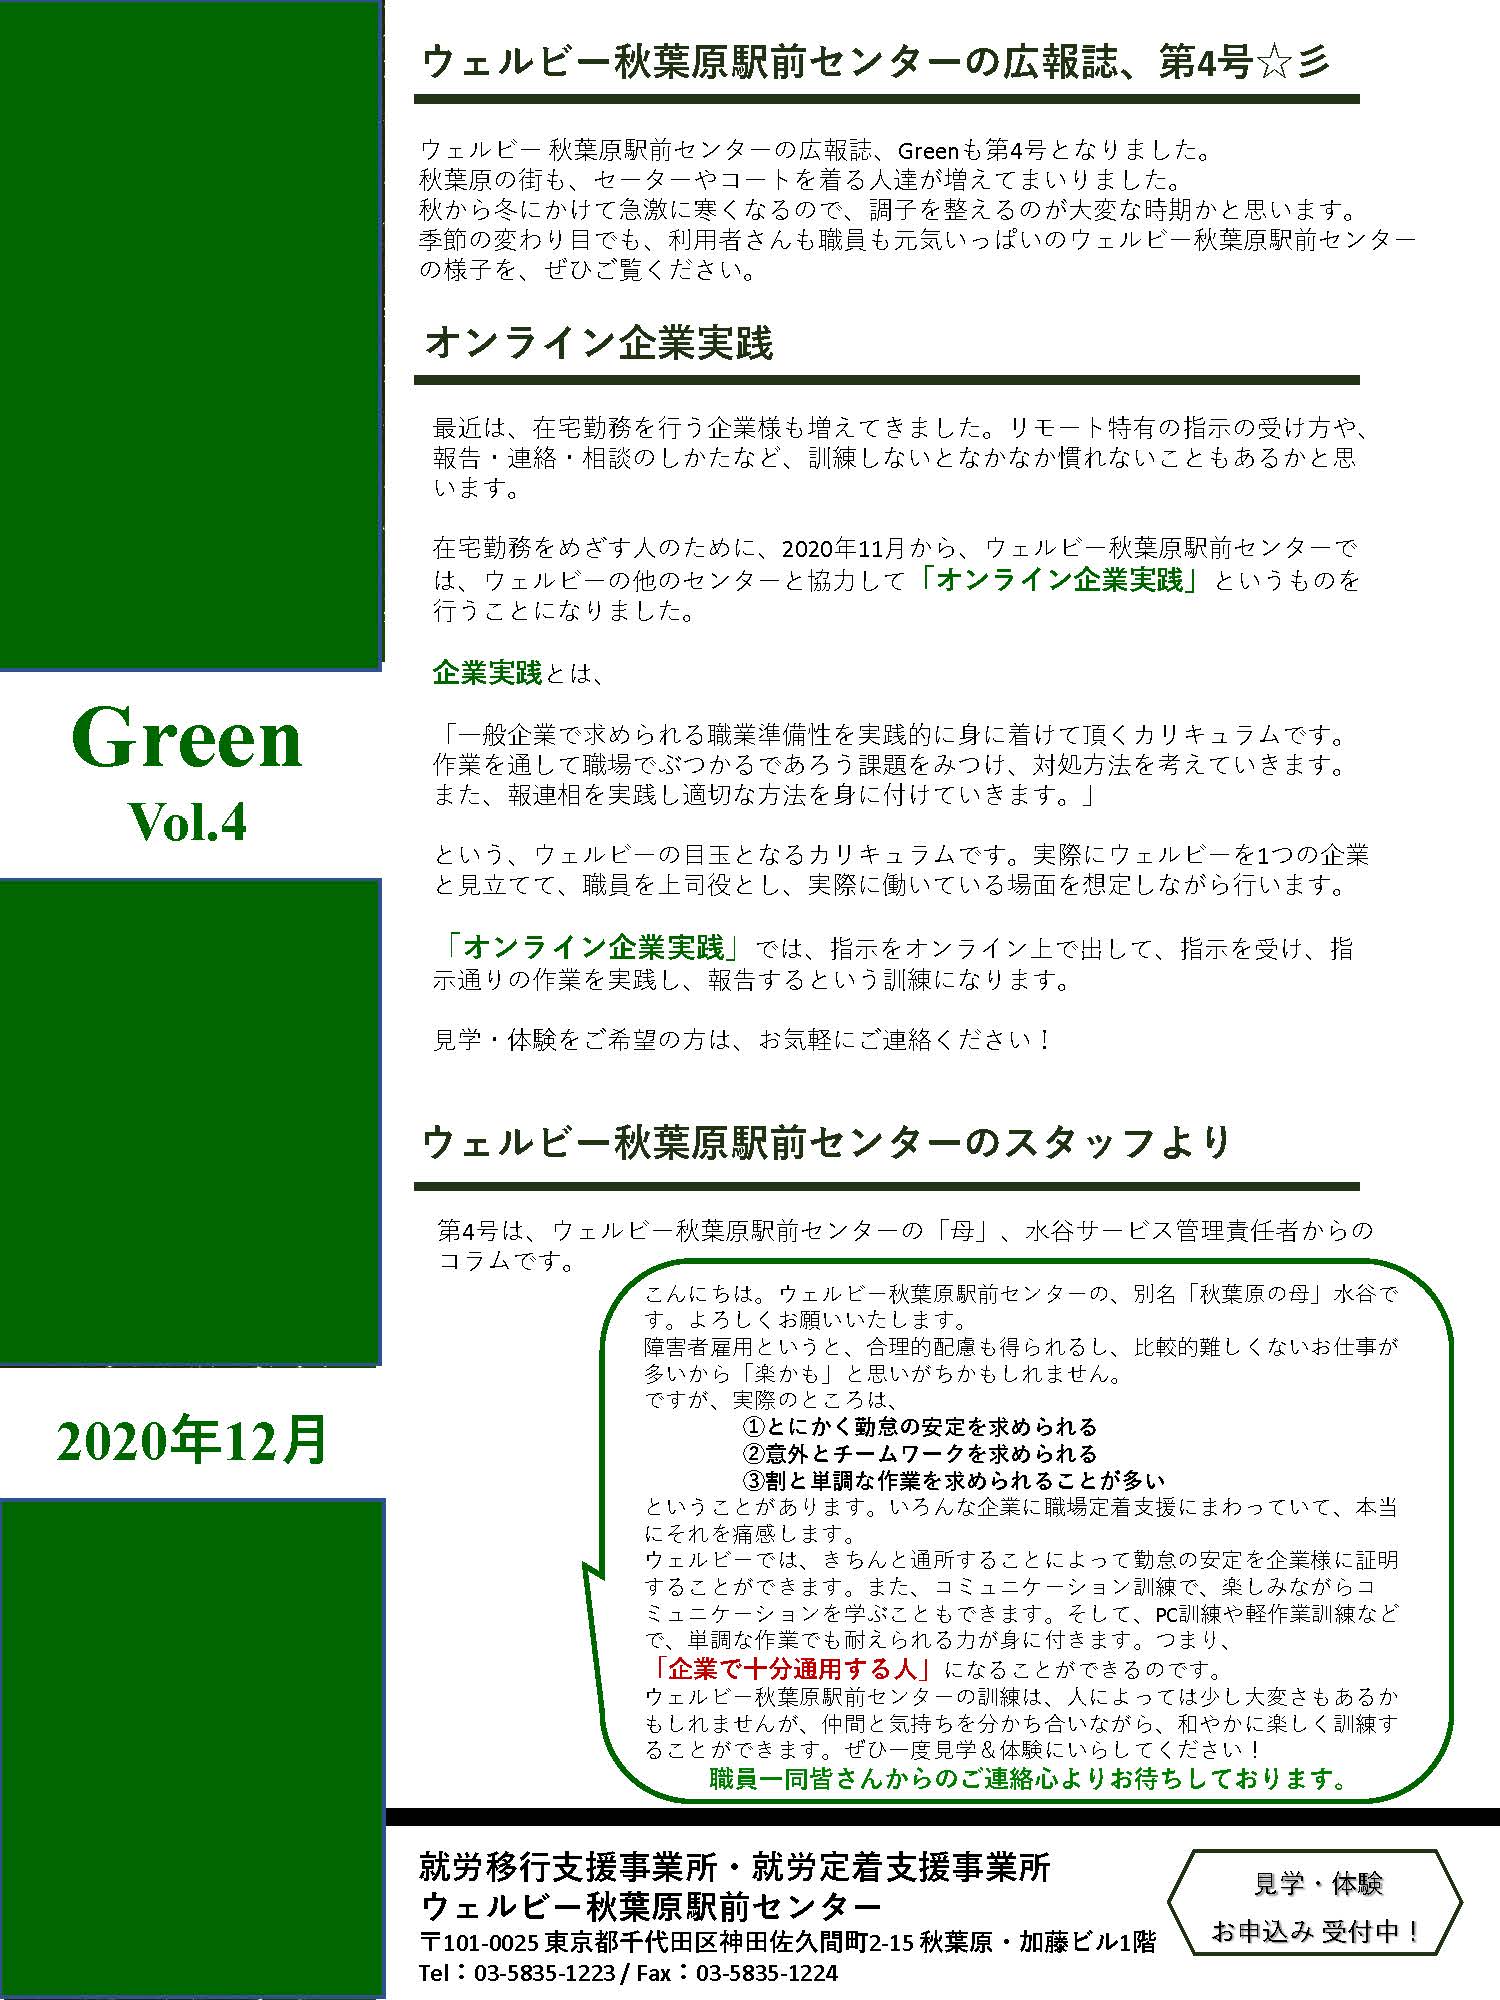 【Green_vol.4】2020年12月号0113_ページ_1